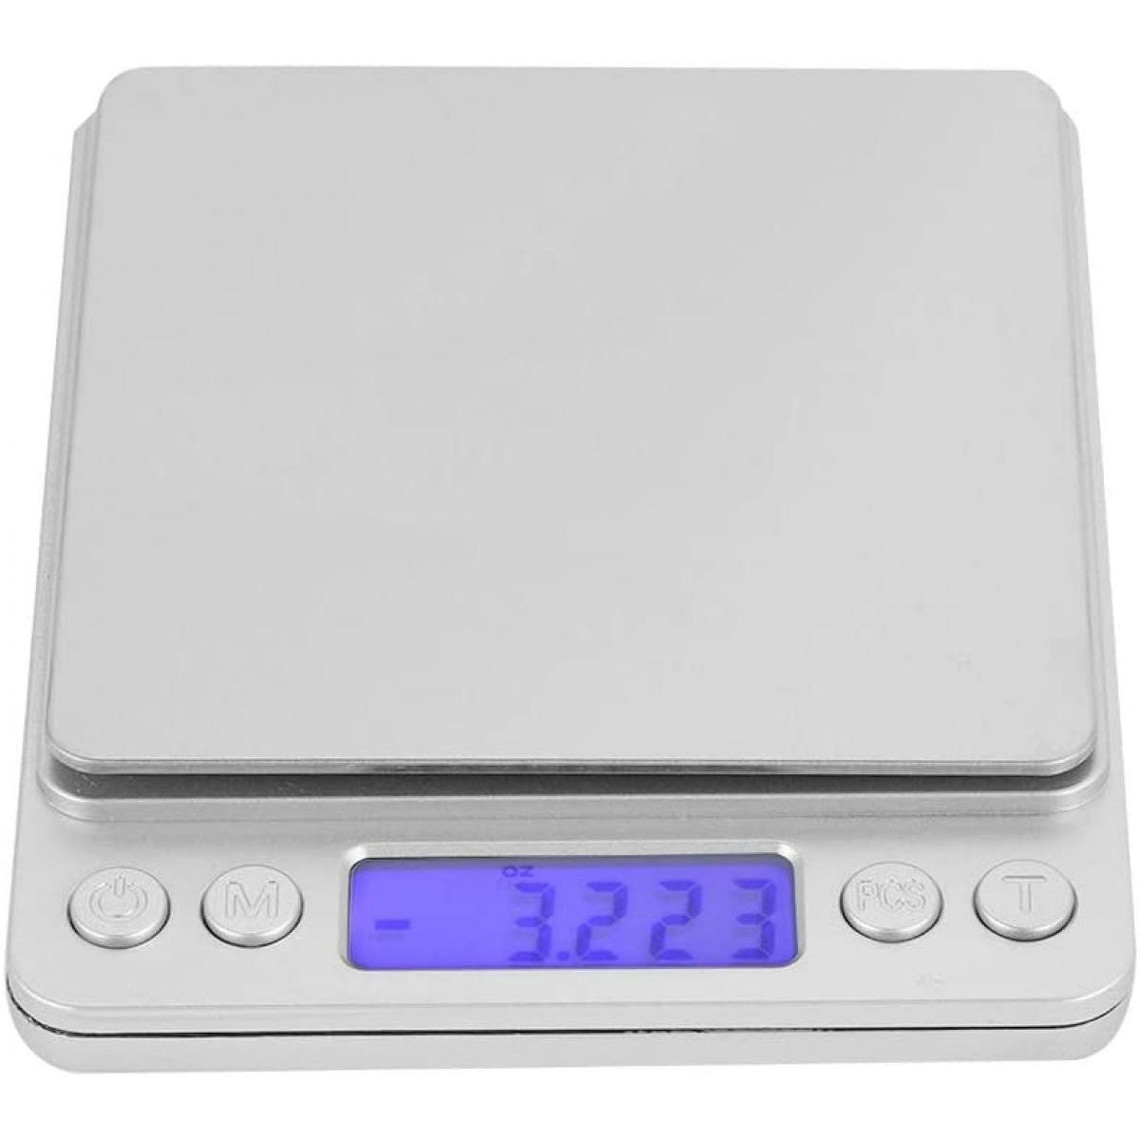 Balance de cuisine Vendos85 Balance de Cuisine Numérique en Acier Inoxydable de Haute Précision 500g/0.01g avec Ecran LCD gris